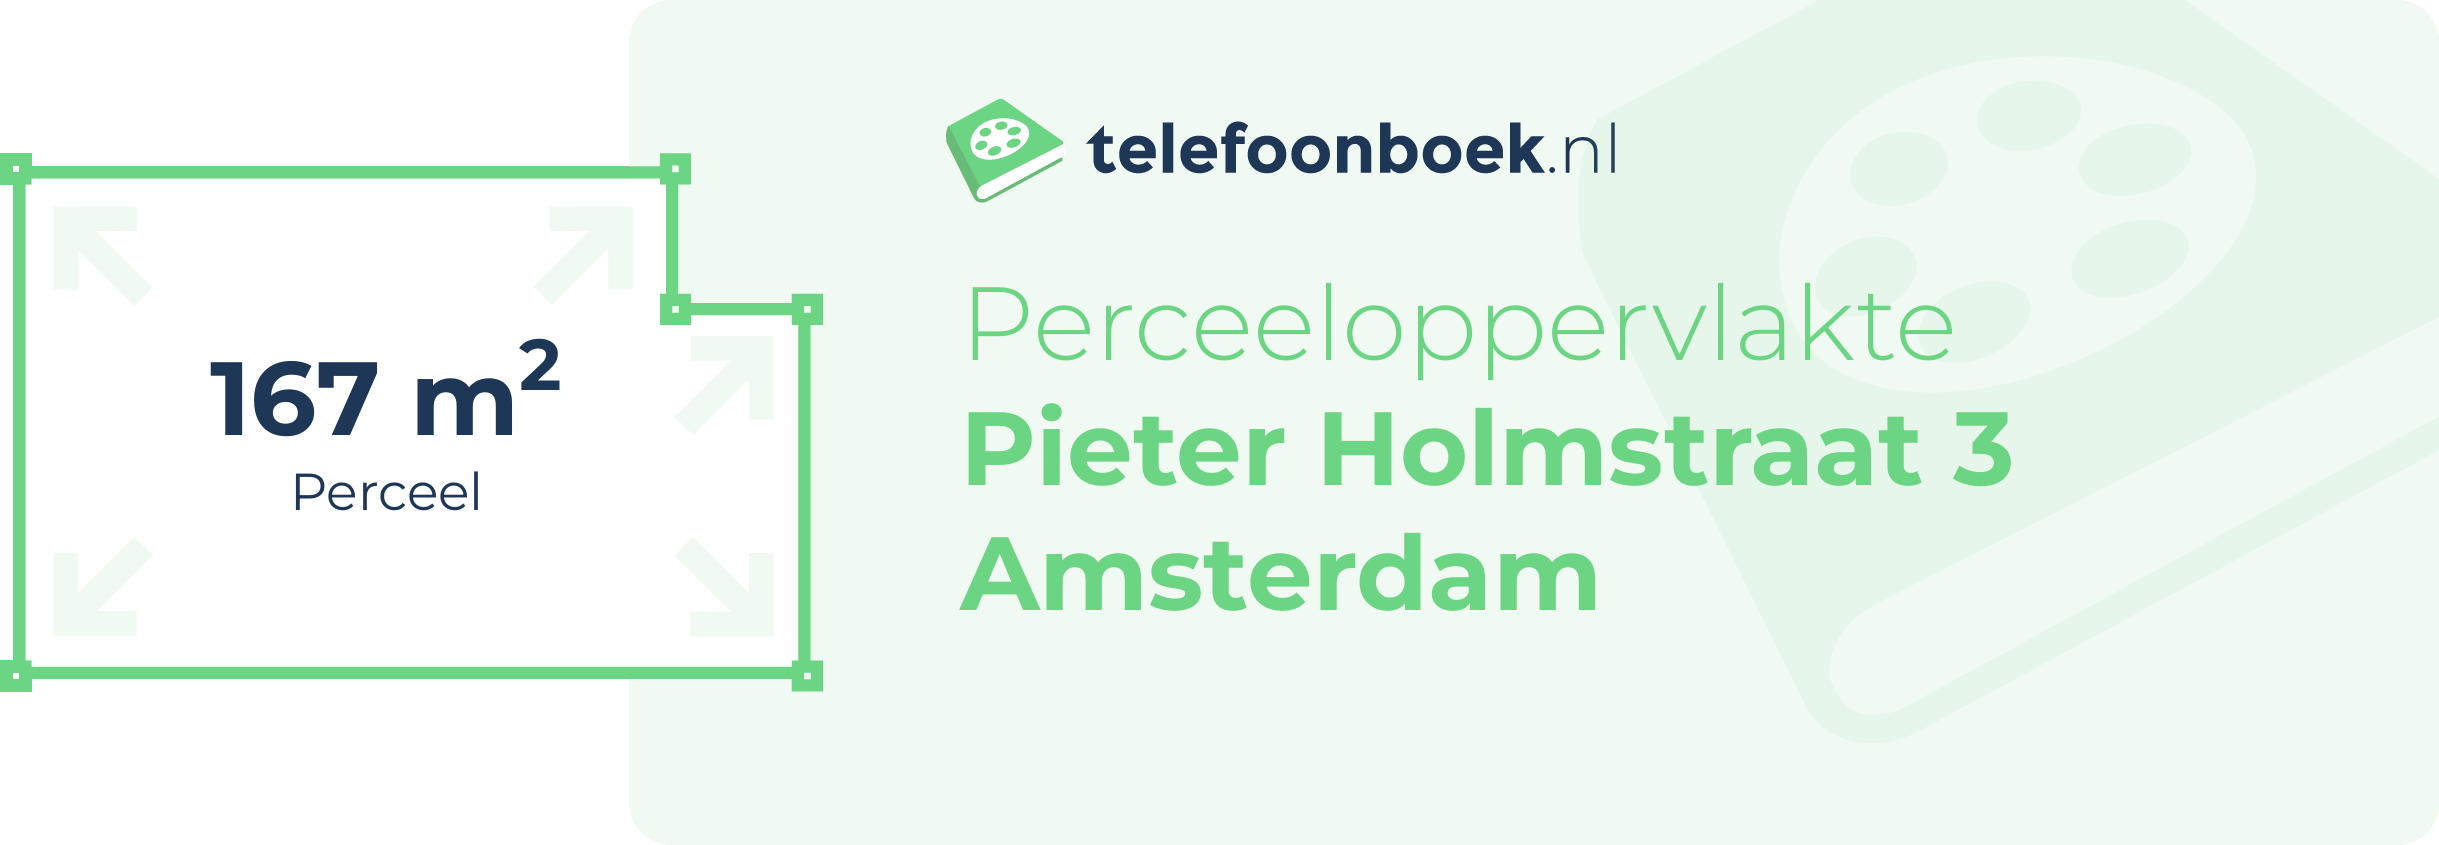 Perceeloppervlakte Pieter Holmstraat 3 Amsterdam